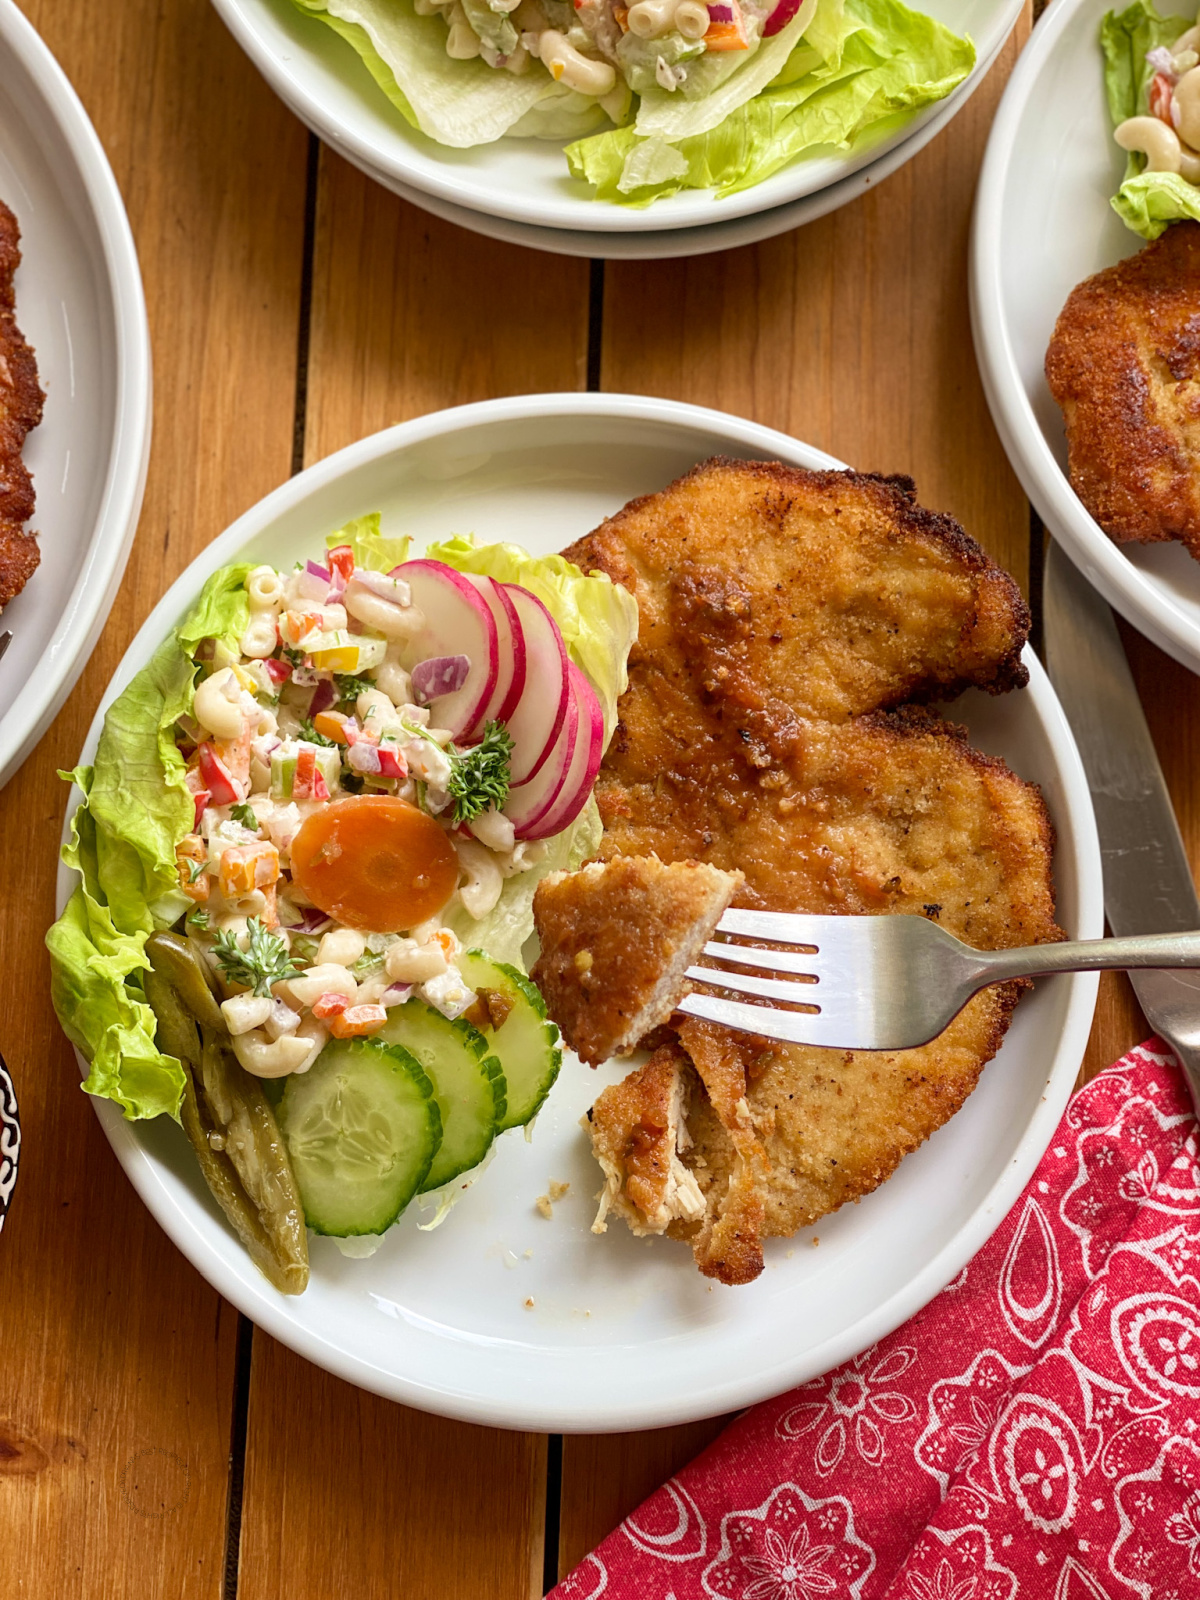 Las recetas fáciles para su menú semanal incluyen milanesas de pollo y ensalada de coditos dignas de una fiesta mexicana en el mes de mayo